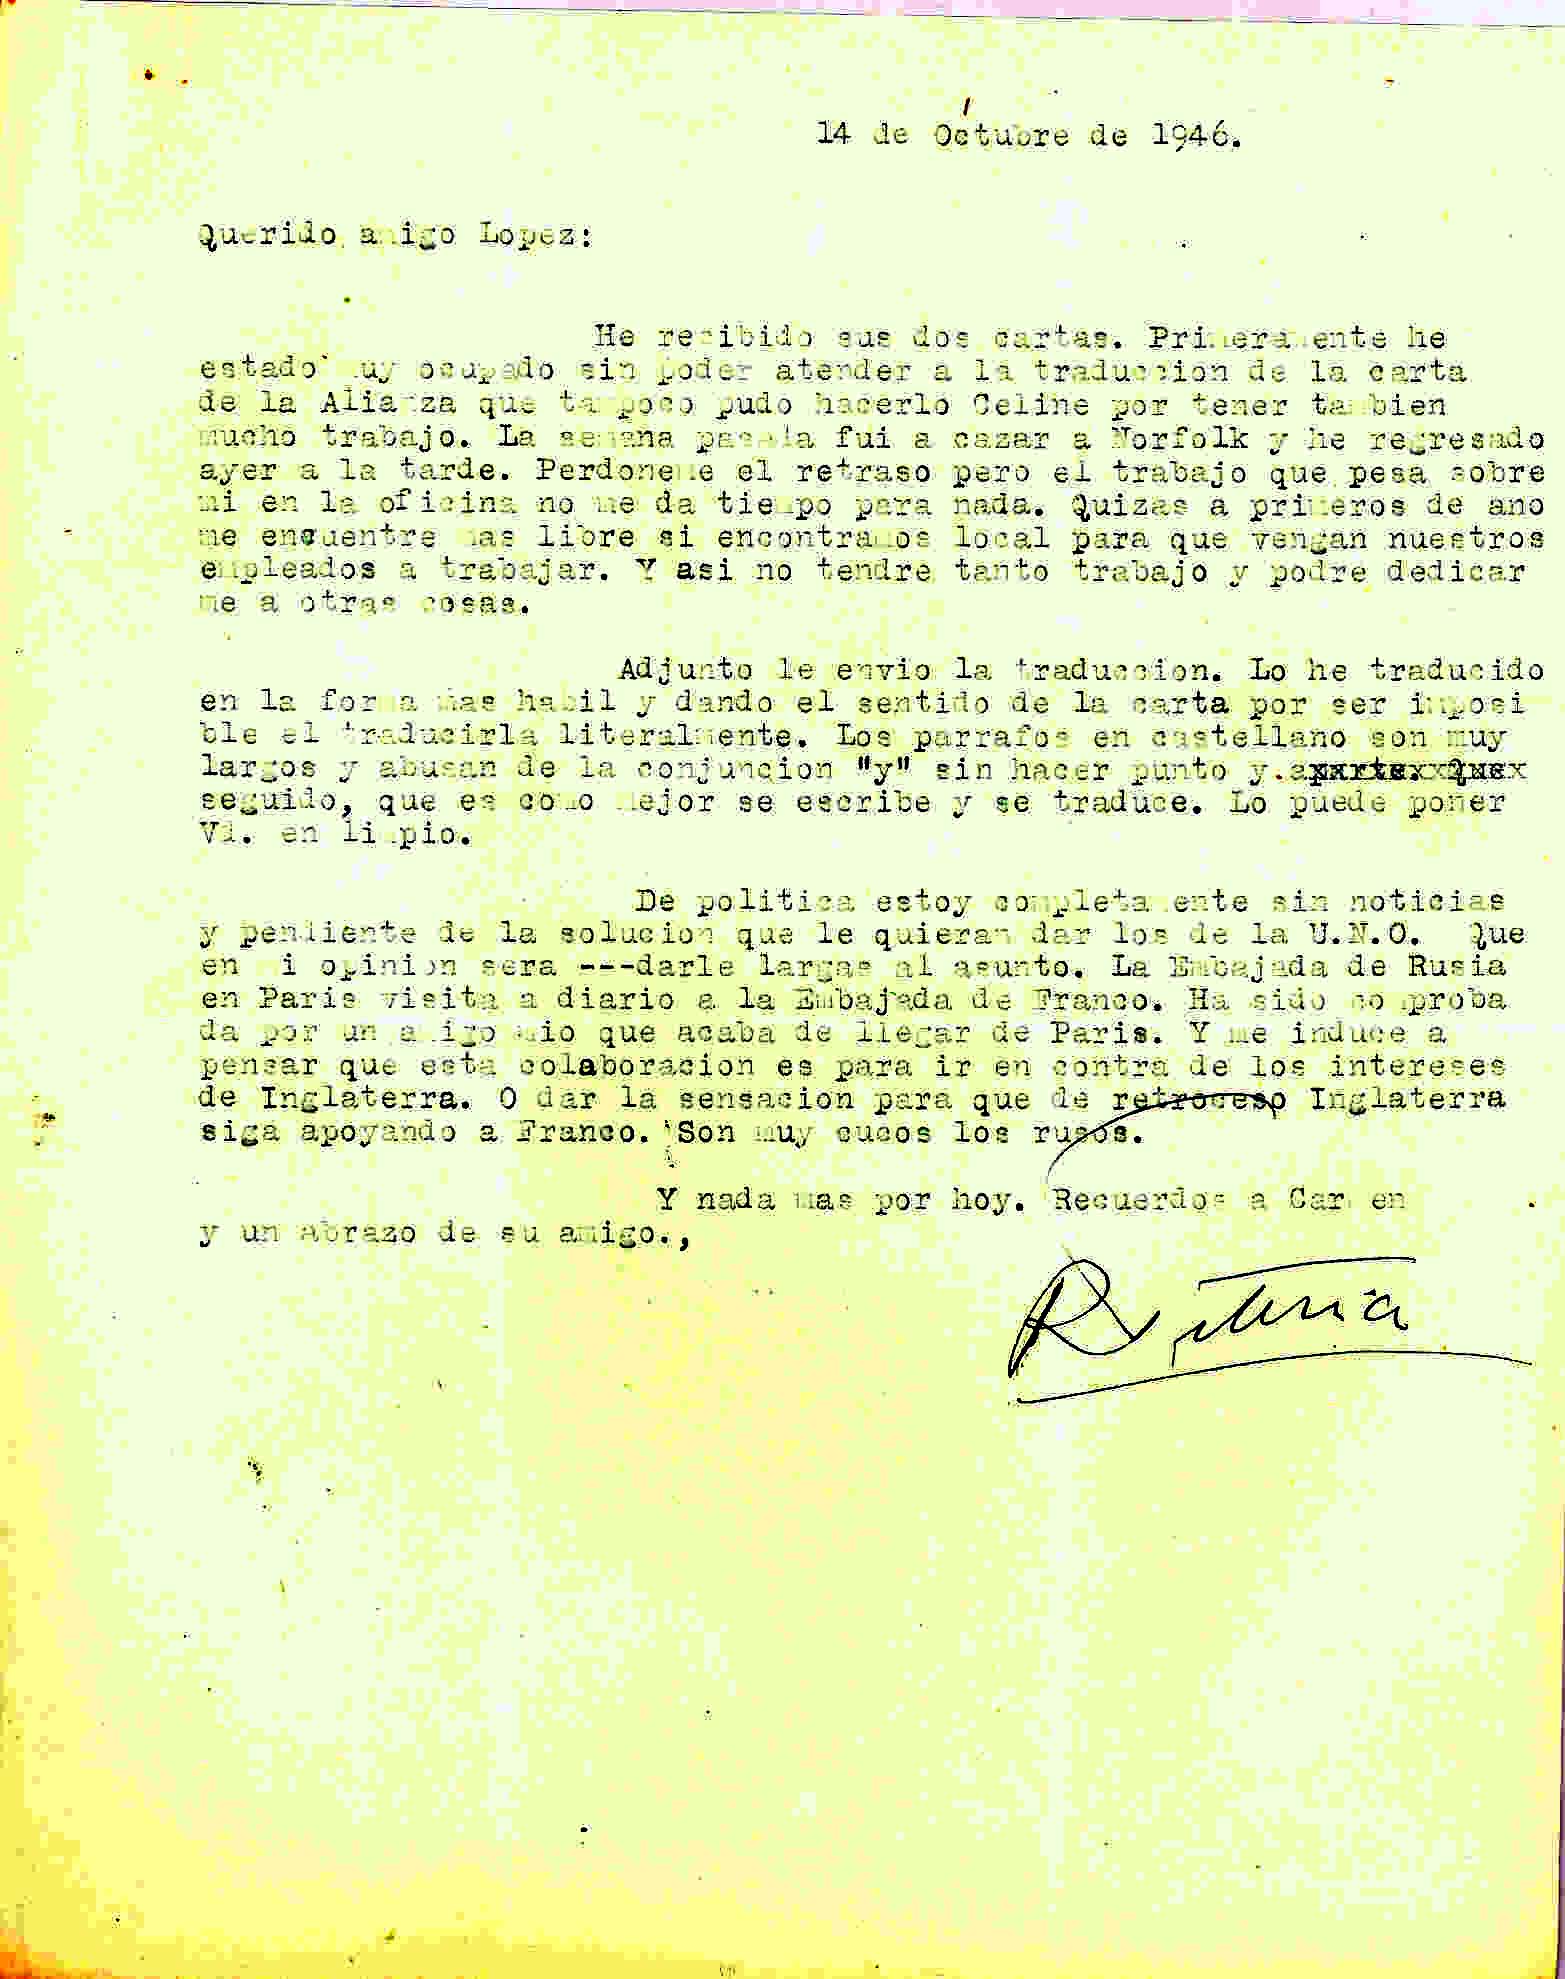 Carta de Roque Victoria en la que cuenta que tradujo el texto de la ANFD; habla de las visitas de la Embajada de Rusia en París a la Embajada de Franco, posiblemente por los intereses de Inglaterra.